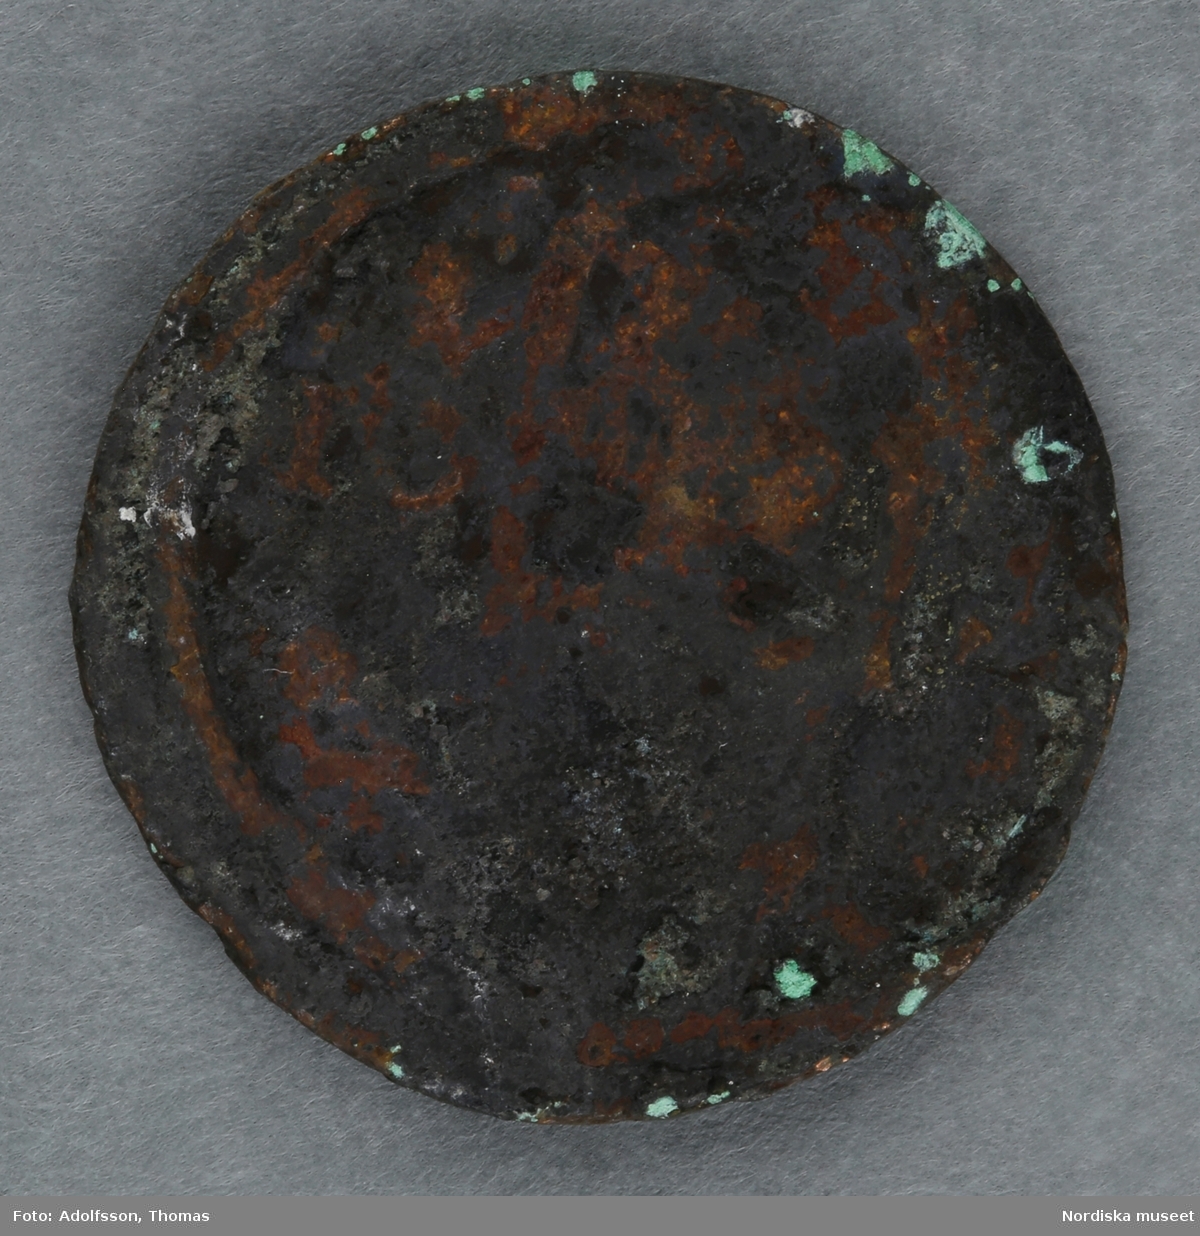 Huvudliggaren:
"a-c.
3 st. mynt av koppar; jordfynd från Sveavägen 52, Stockholm. Ink. 16/5 1919 av arbetare på platsen gm amanuens S. Wallin, Stockholm."